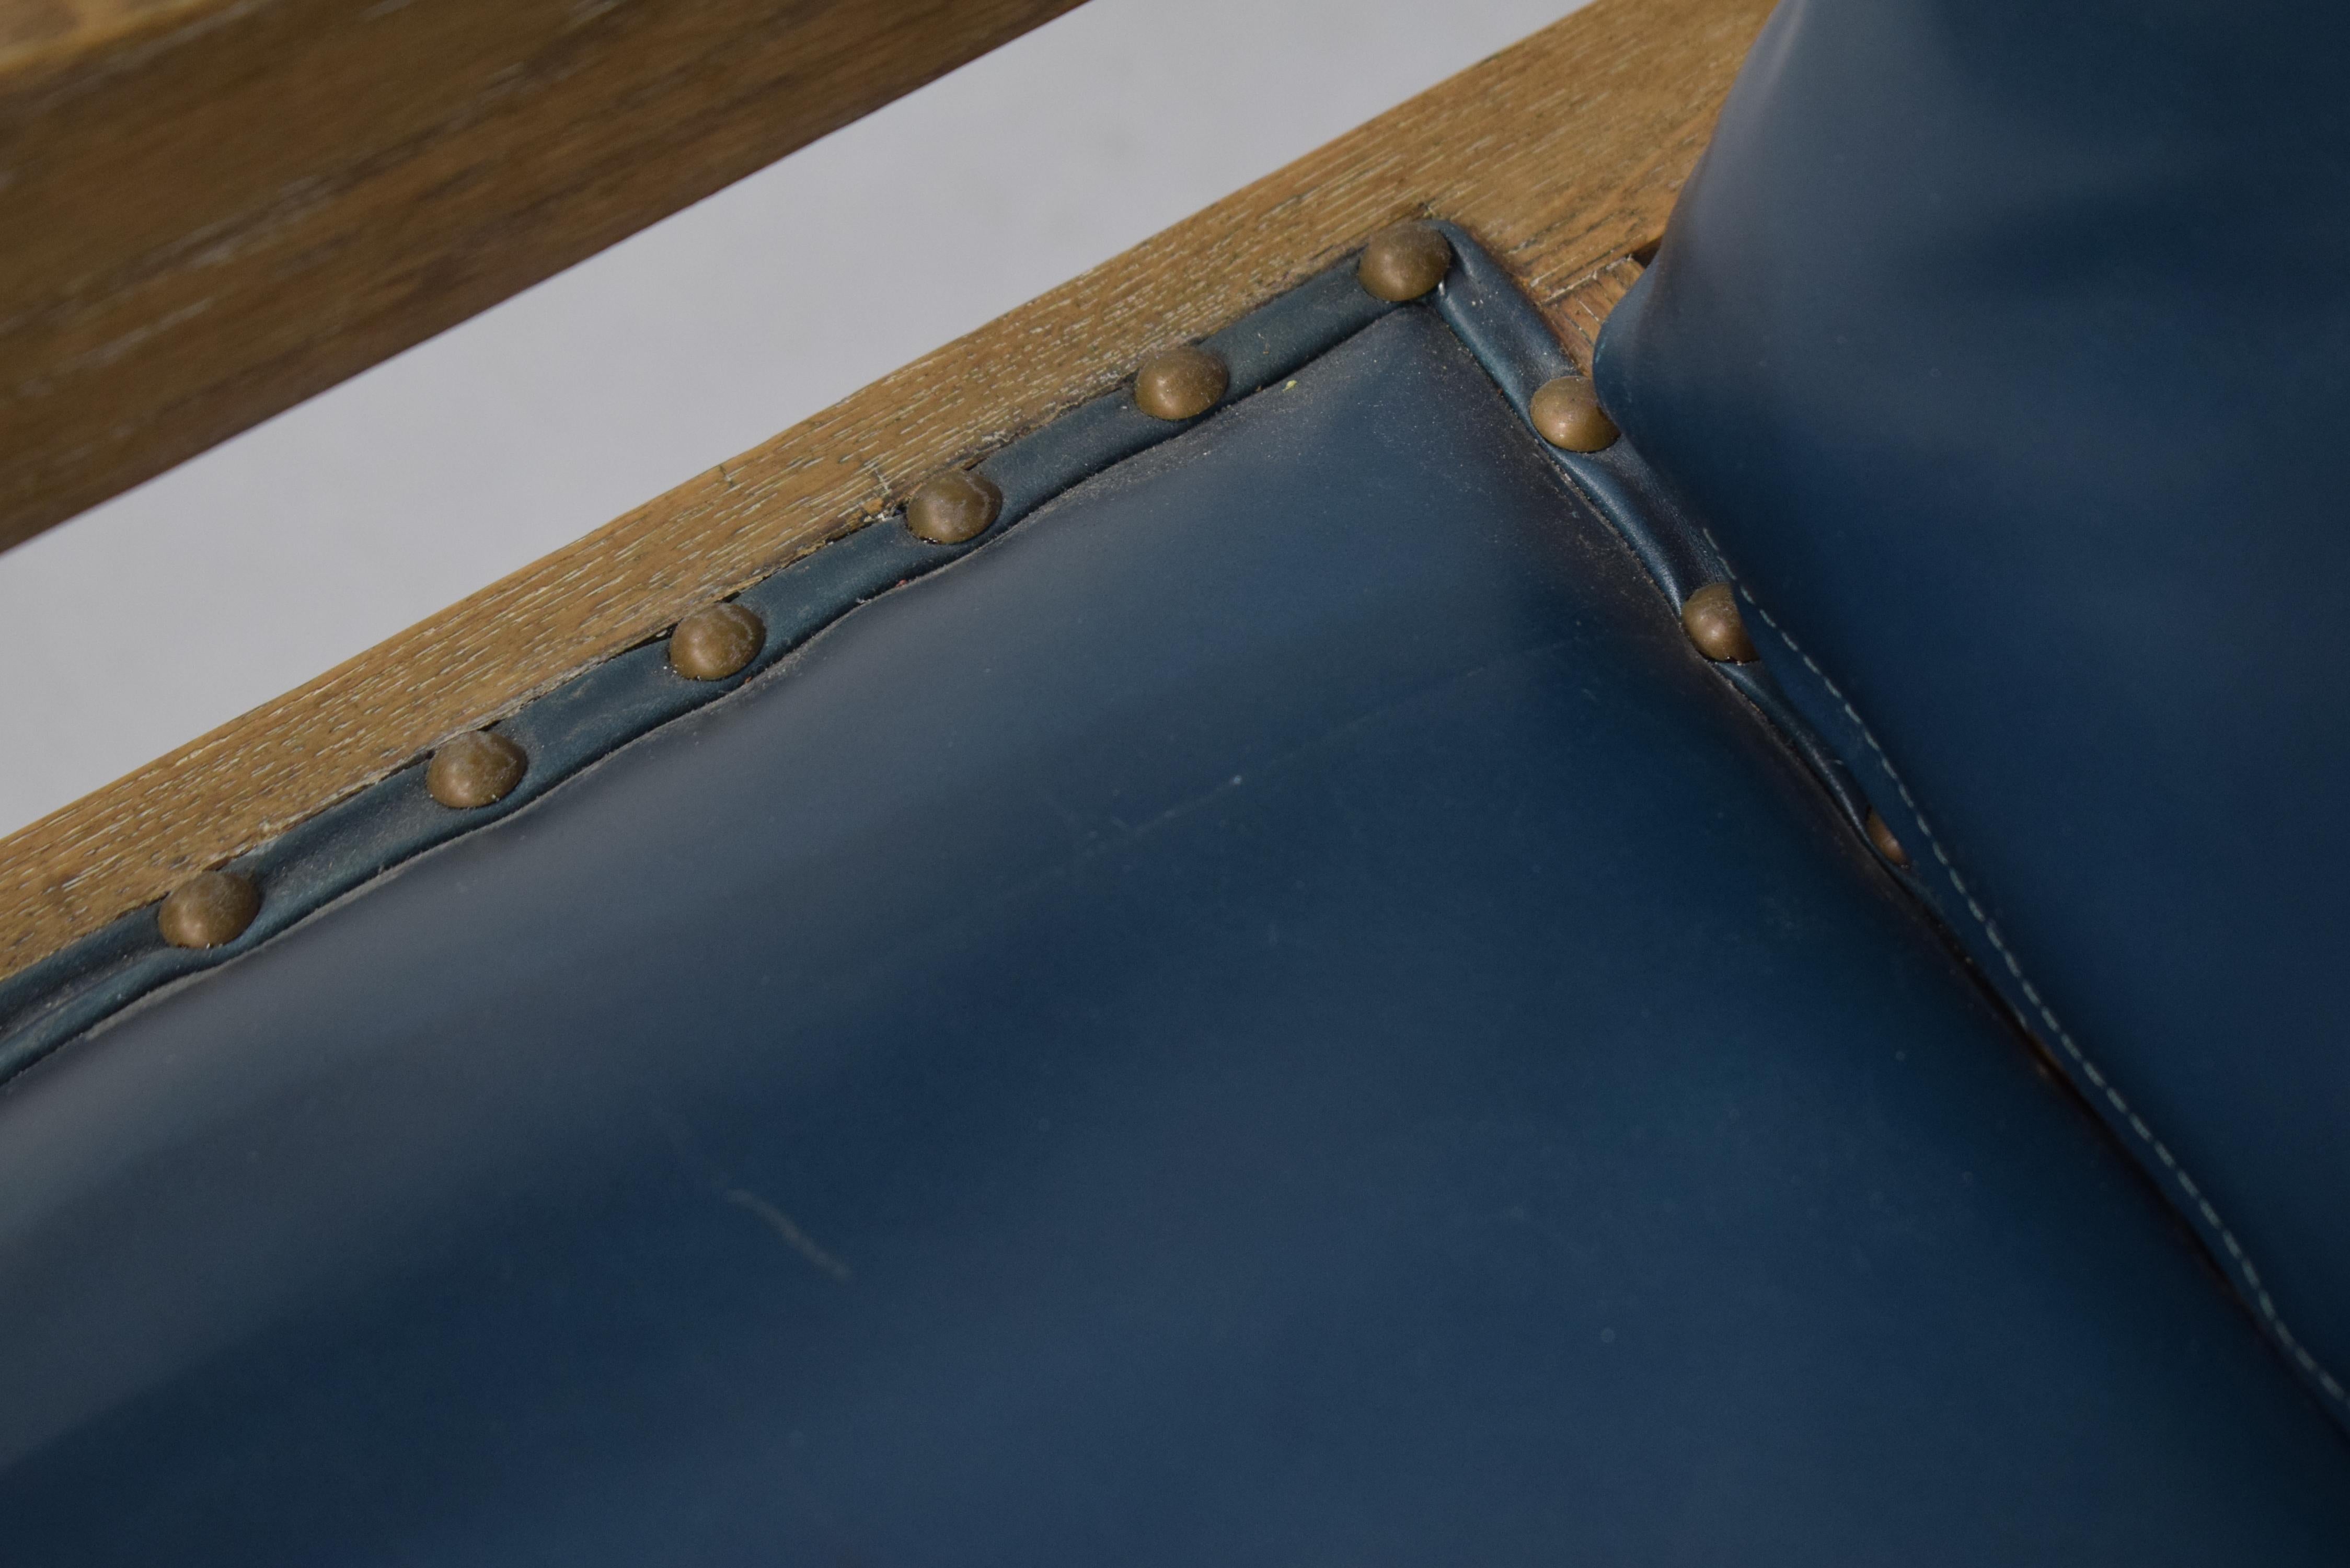 Rare exemple de fauteuil inclinable de grande taille par Ambrose Heal's, datant du début du 20e siècle en Angleterre. Cadre / structure en chêne massif qui a été nouvellement et fraîchement refini en chêne cérusé clair avec une brillance mate. La